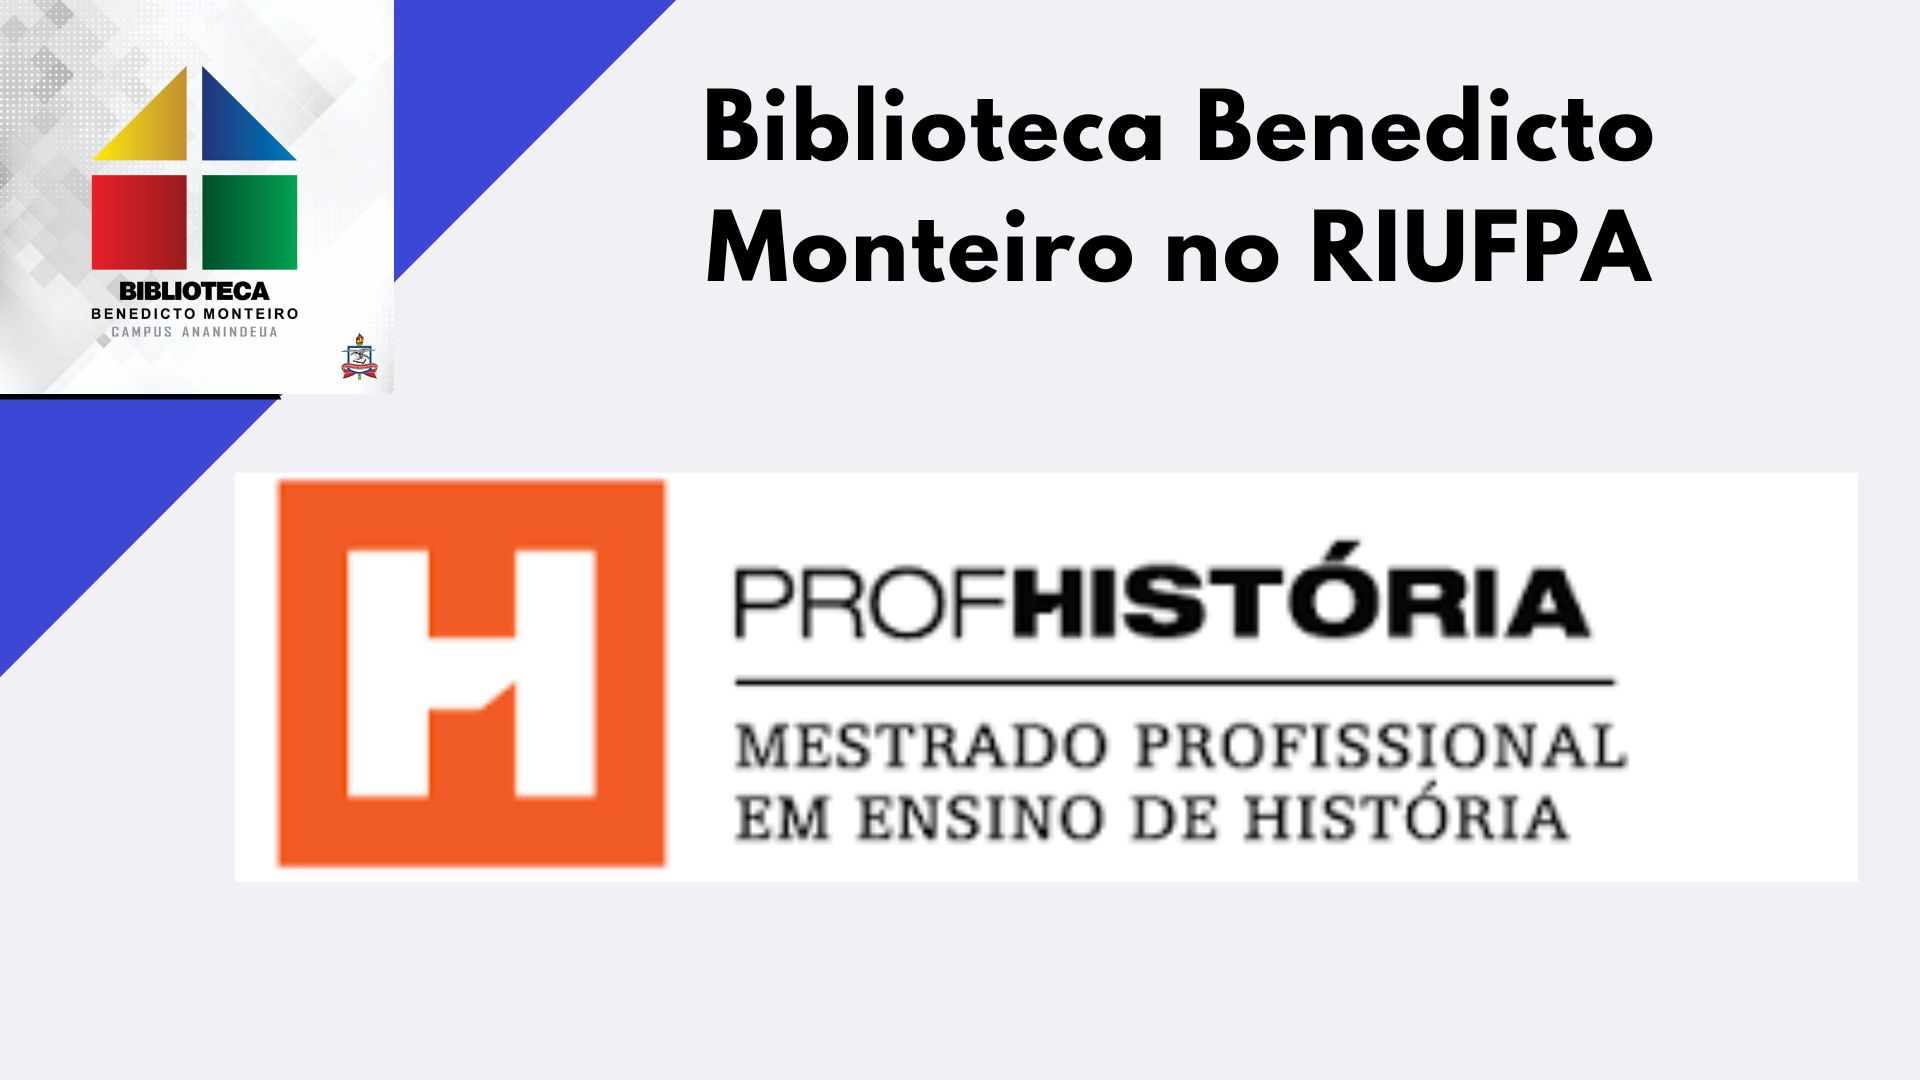 Mestrado Profissional em Ensino de História - PROFHISTÓRIA/ANANINDEUA